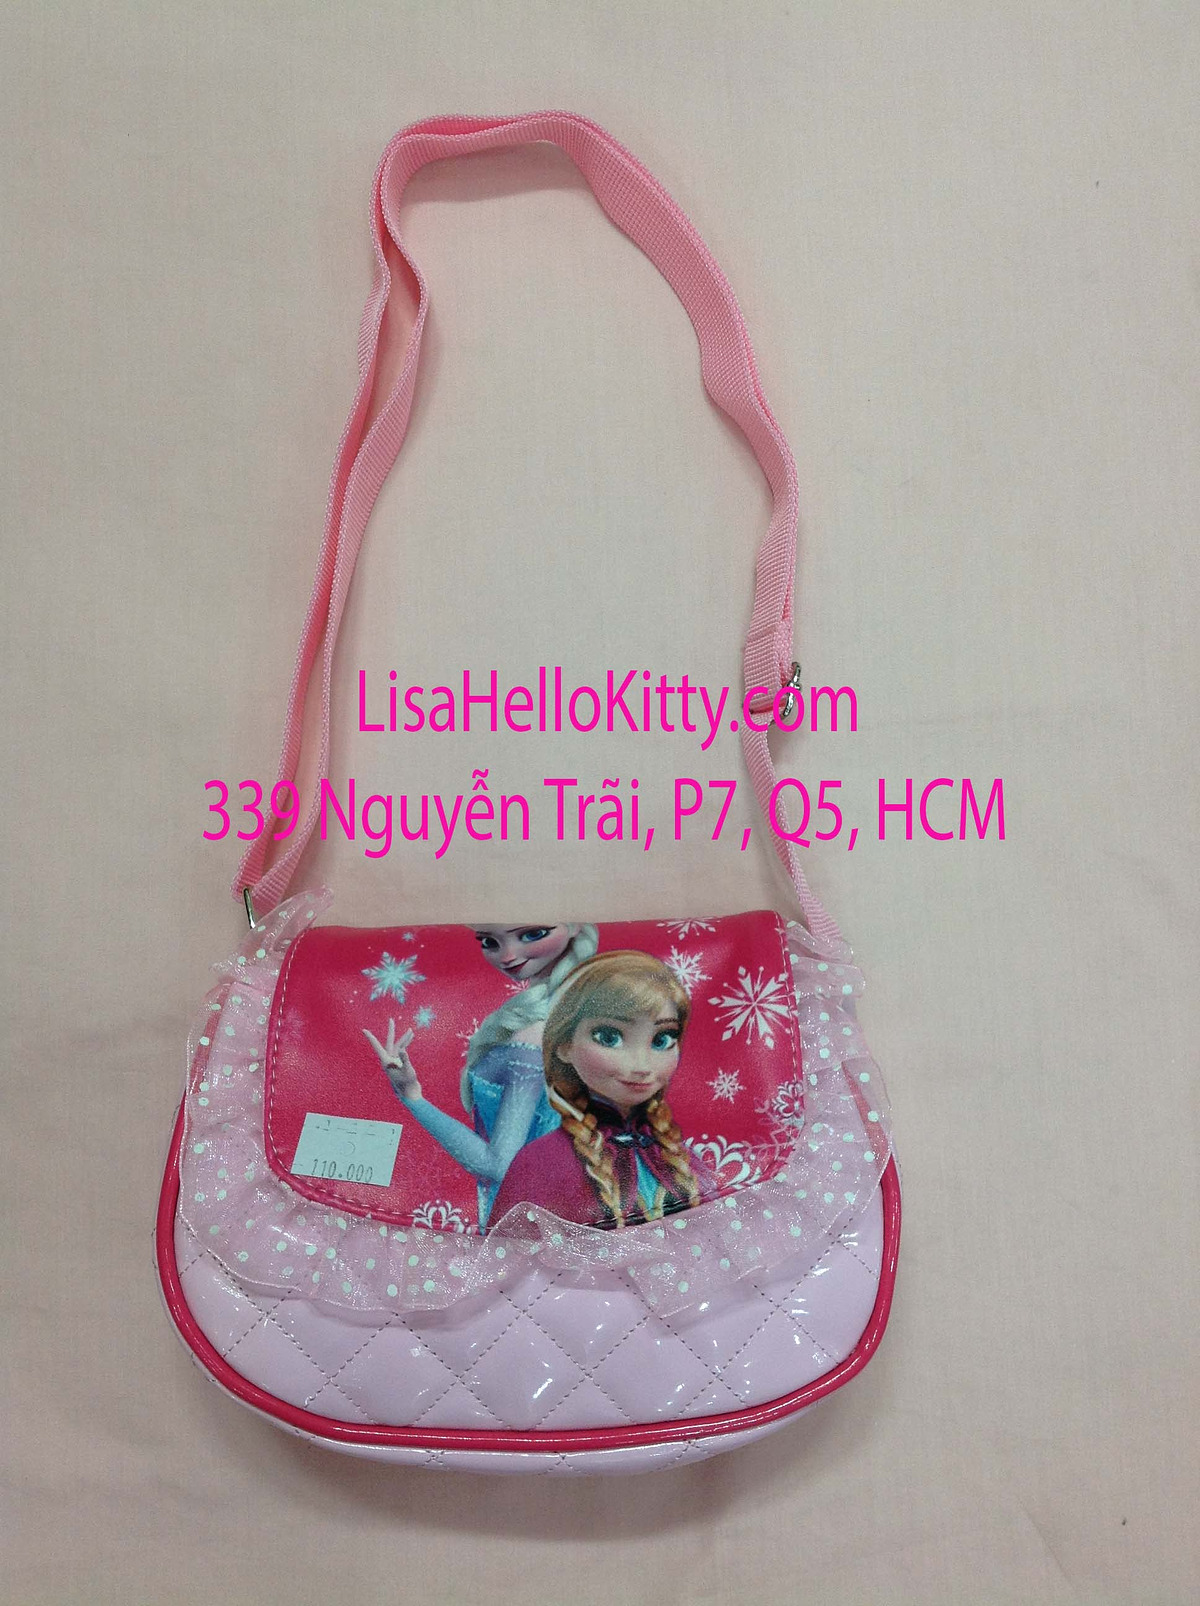 Lisa Shop - Túi xách, túi đeo chéo Hello Kitty công chúa Elsa cho bé - 1